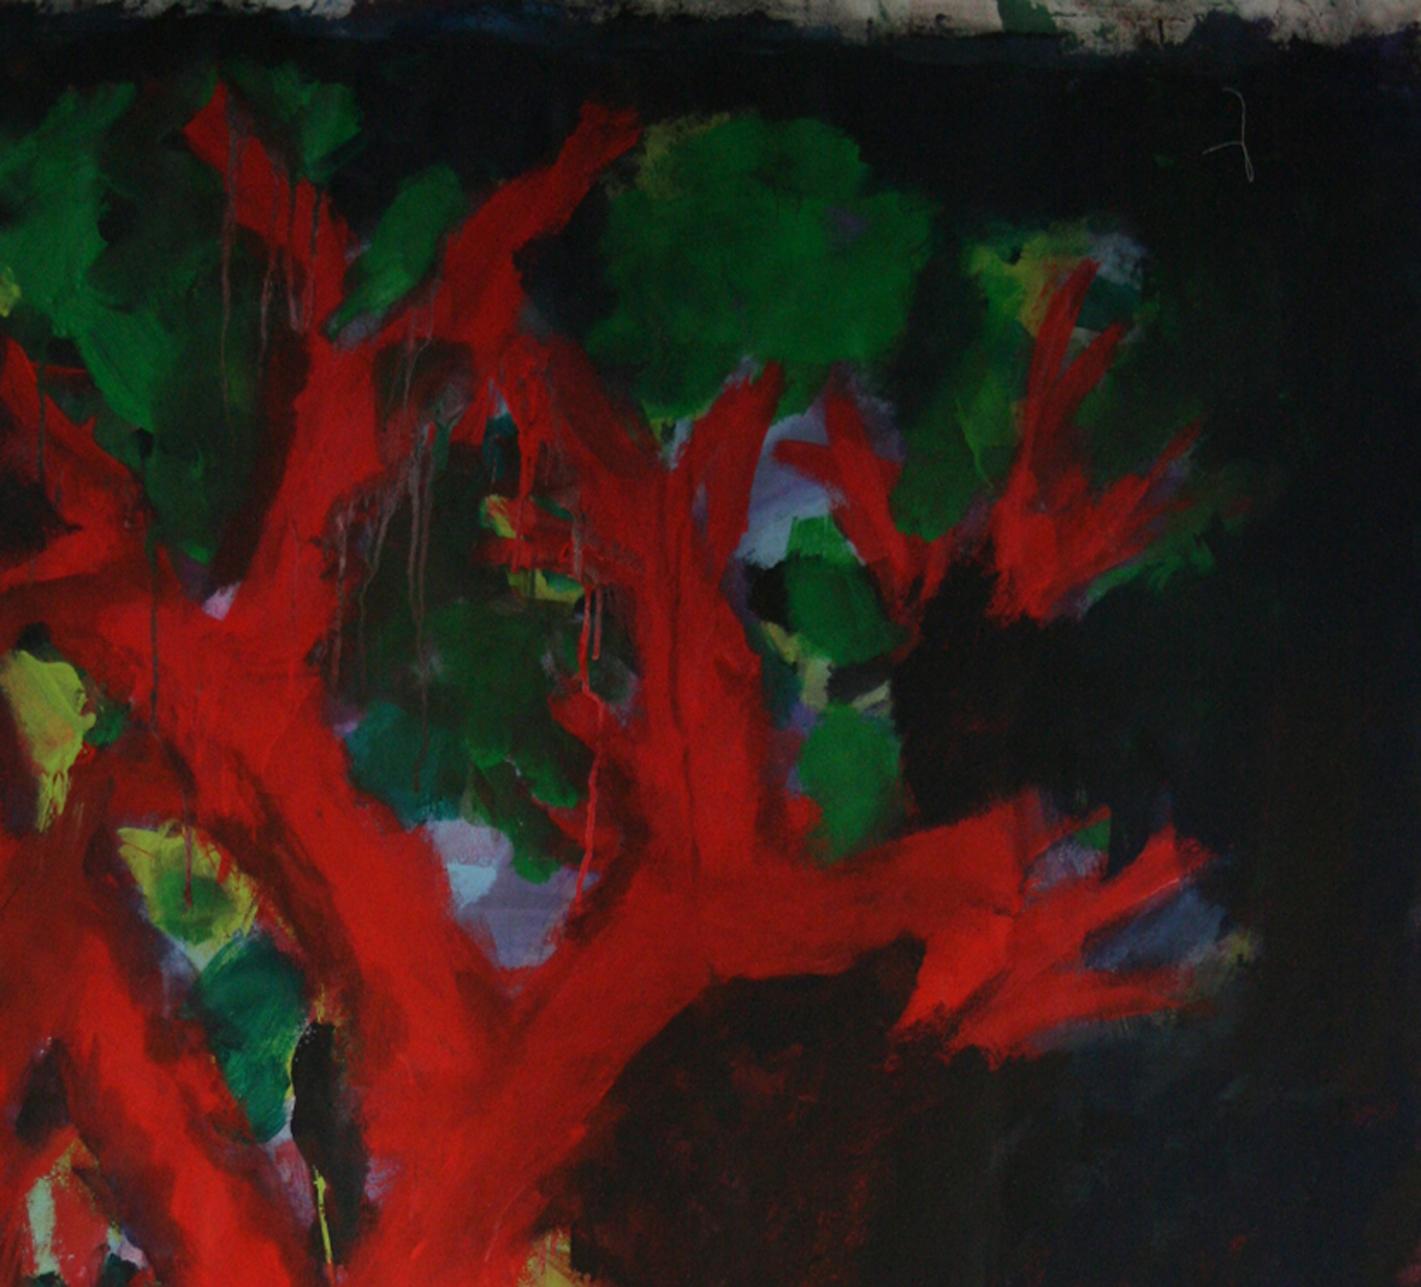 Peinture d'artiste française « Arbre » de Nathalie Fontenoy, 7 arbres sur toile - Noir Landscape Painting par Nathalie Fontenoy 